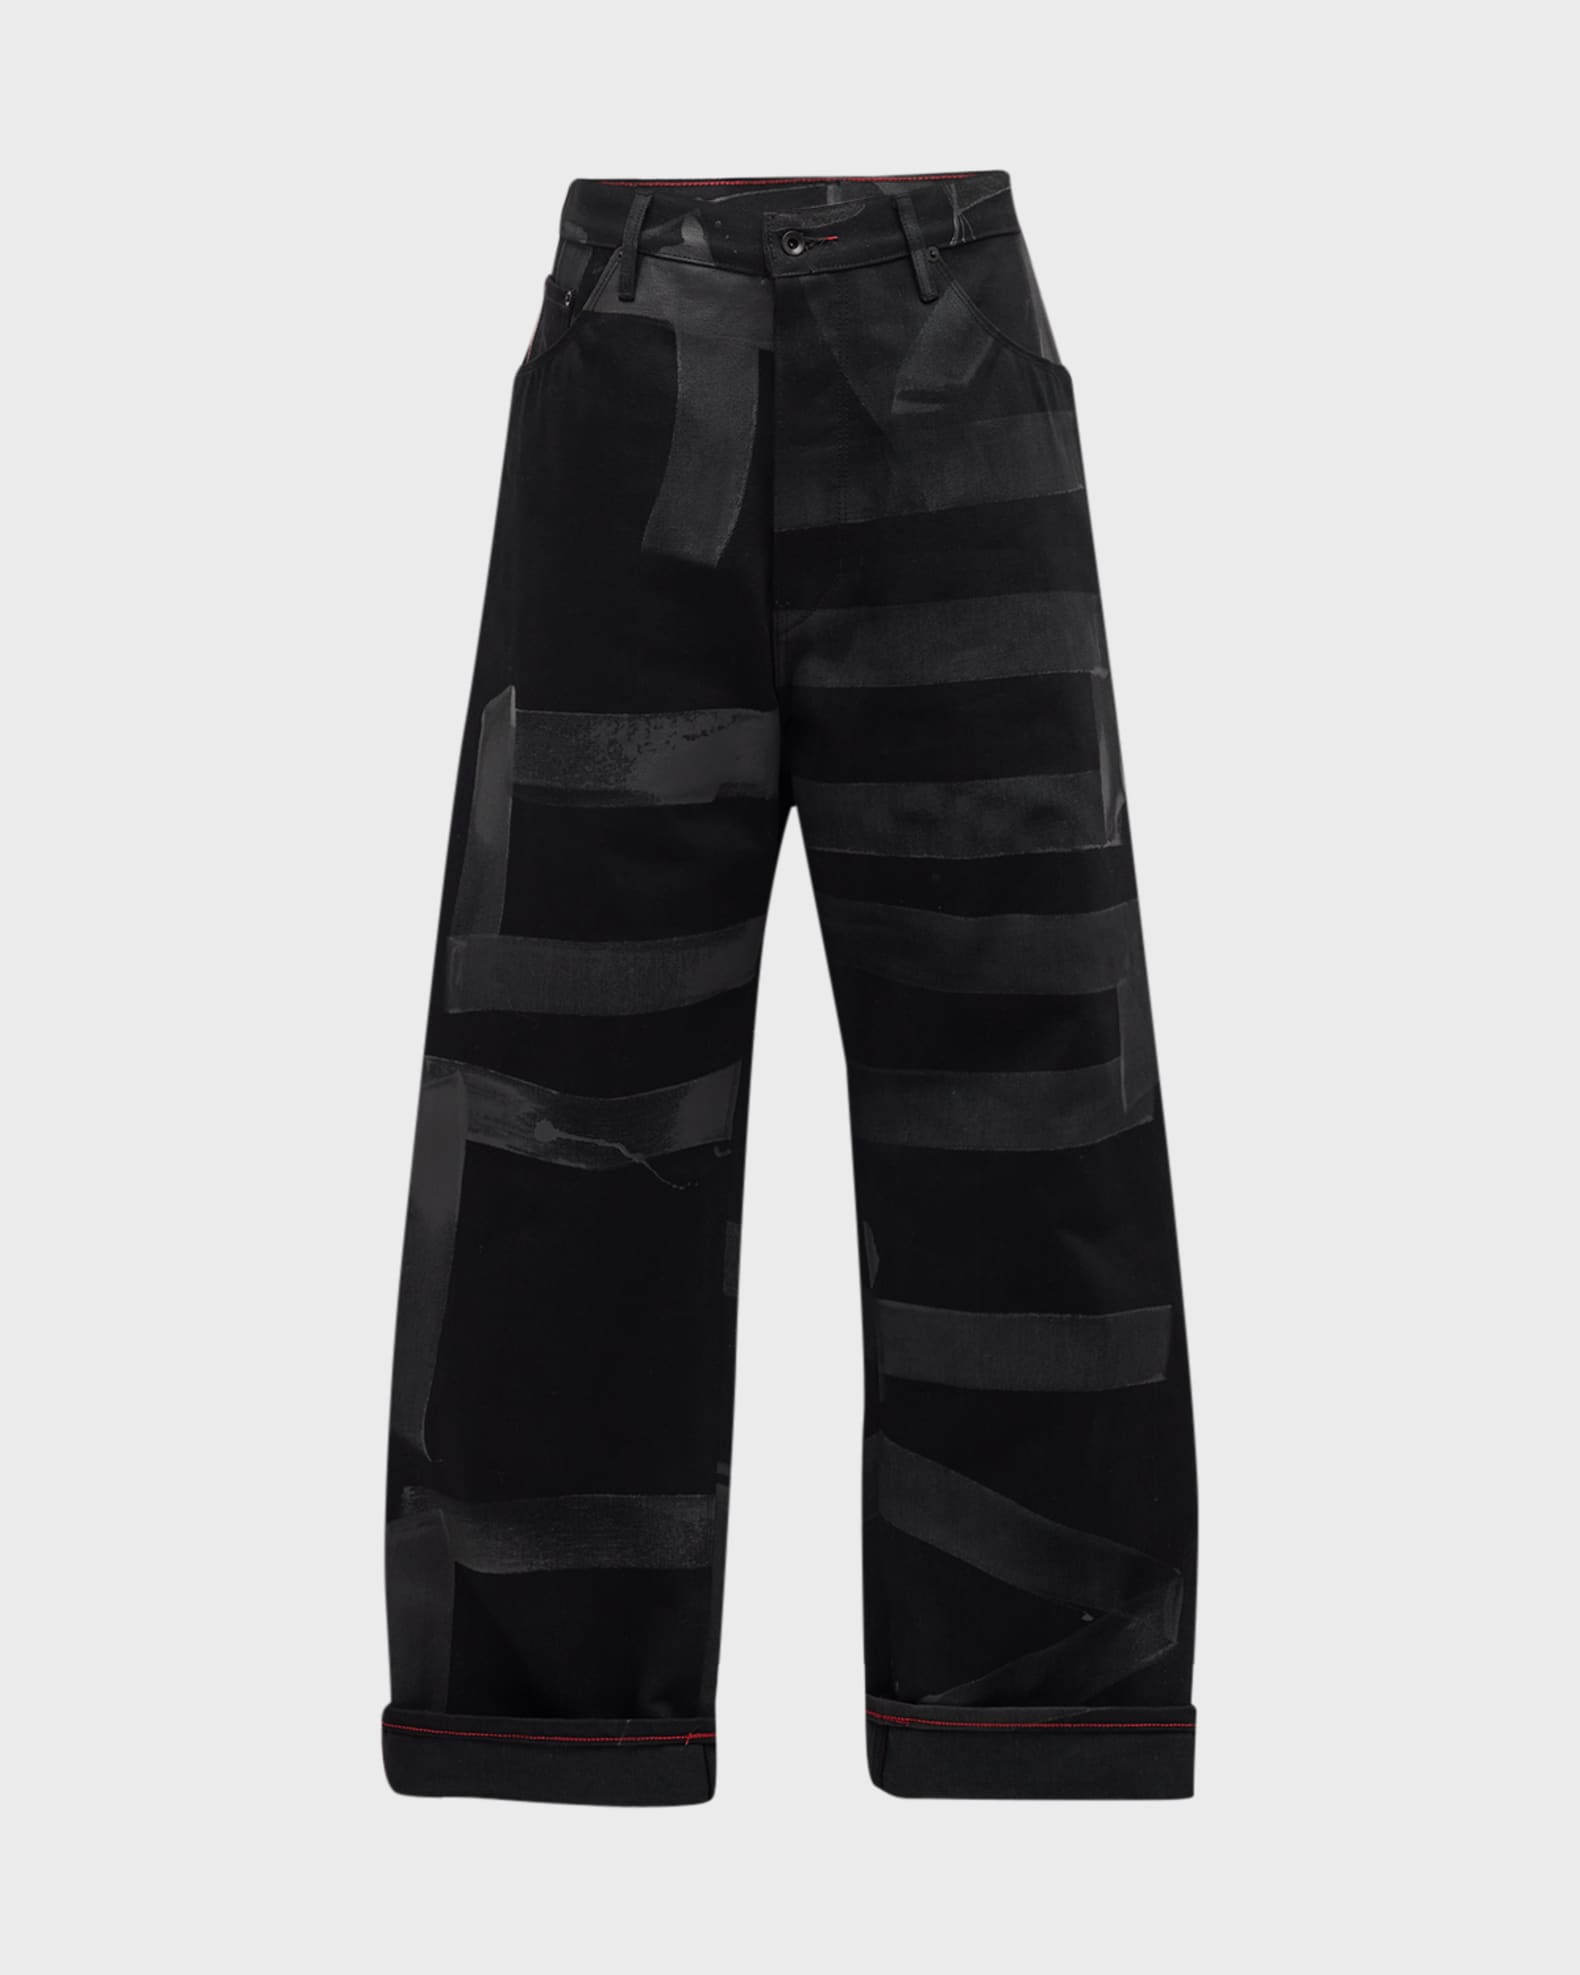 Raleigh Workshop Men's Denim Jeans | Rowan in Pointalist Denim Stripe | Size 31 | 100% Cotton